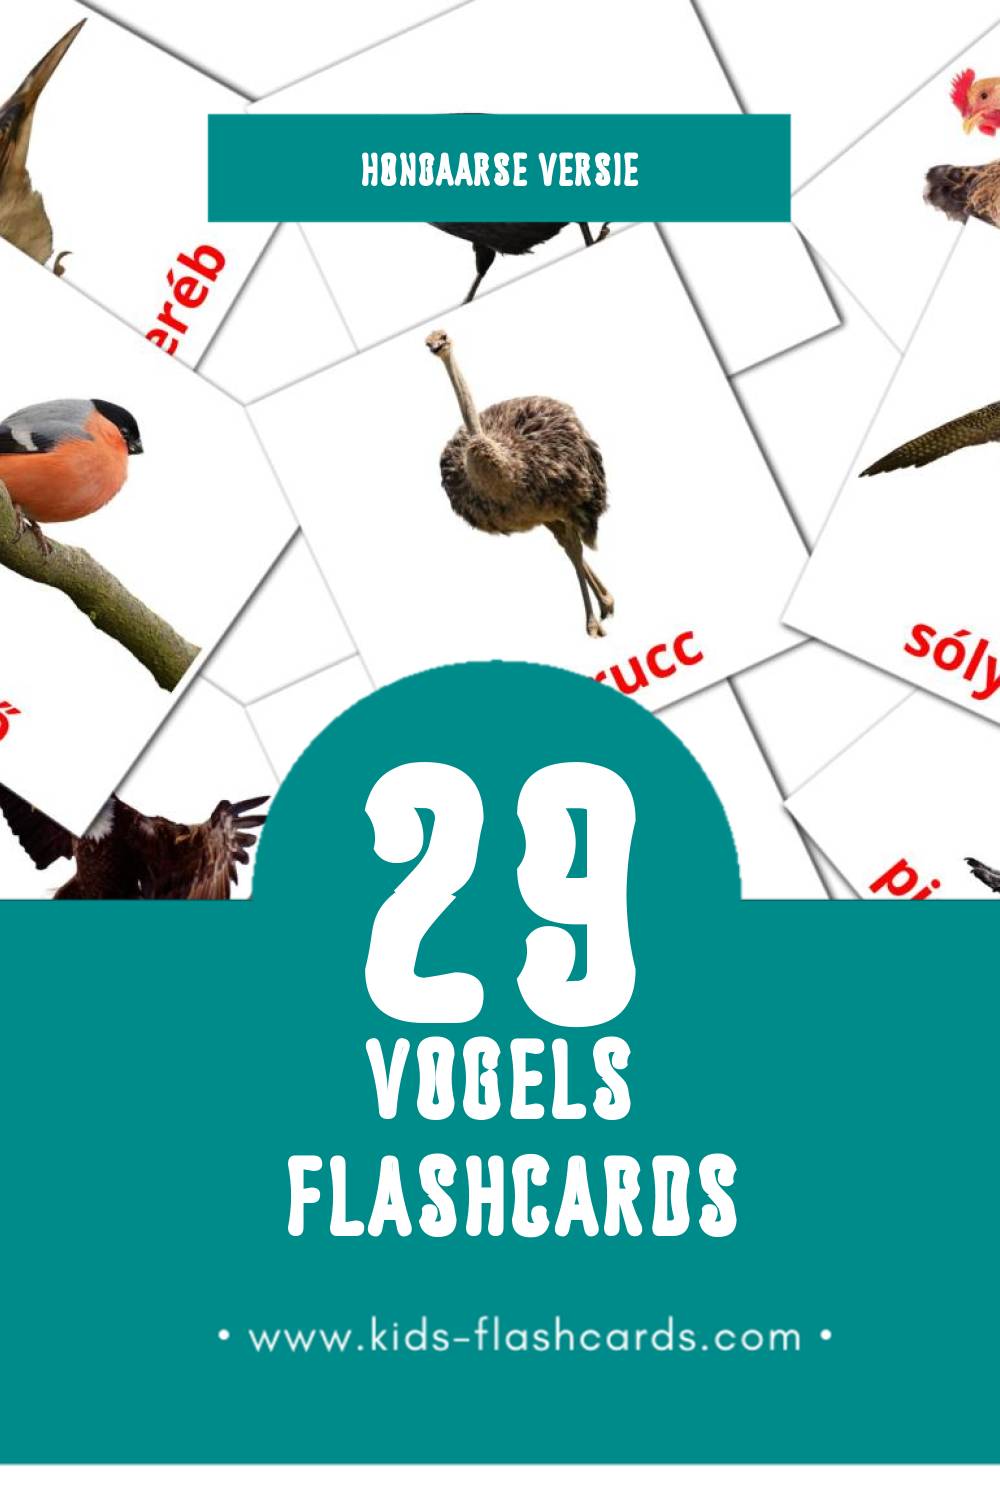 Visuele Madarak Flashcards voor Kleuters (29 kaarten in het Hongaars)